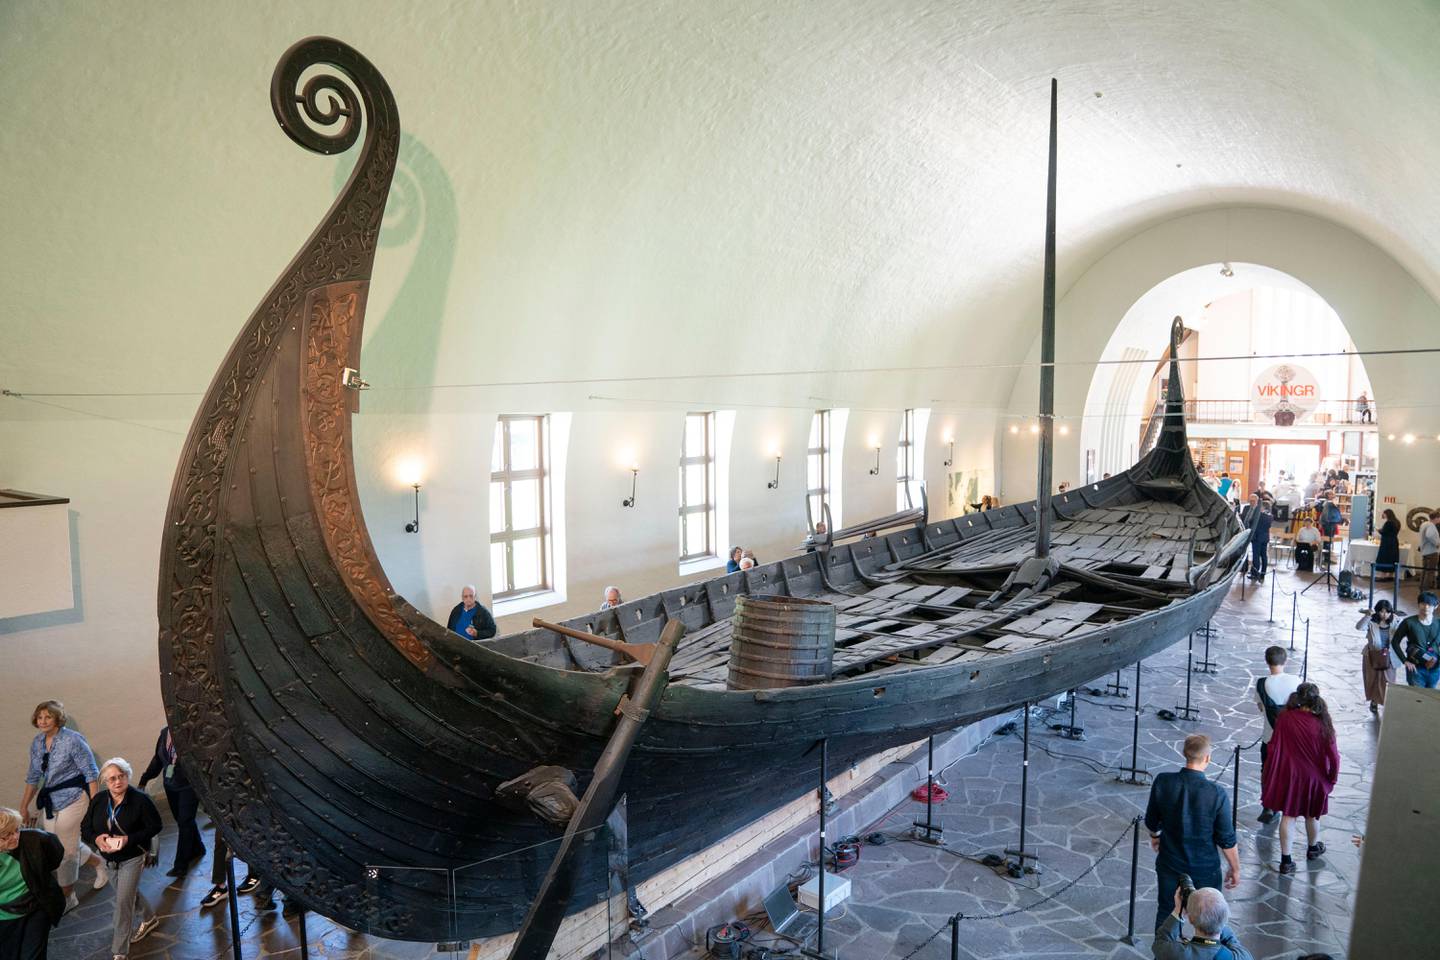 Oslo 2019902. 
Regjeringen bevilger 35 millioner kroner til å starte bygging av nytt Vikingtidsmuseum på Bygdøy. Det ble offentliggjort på en pressekonferanse mandag.
Foto: Håkon Mosvold Larsen / NTB scanpix